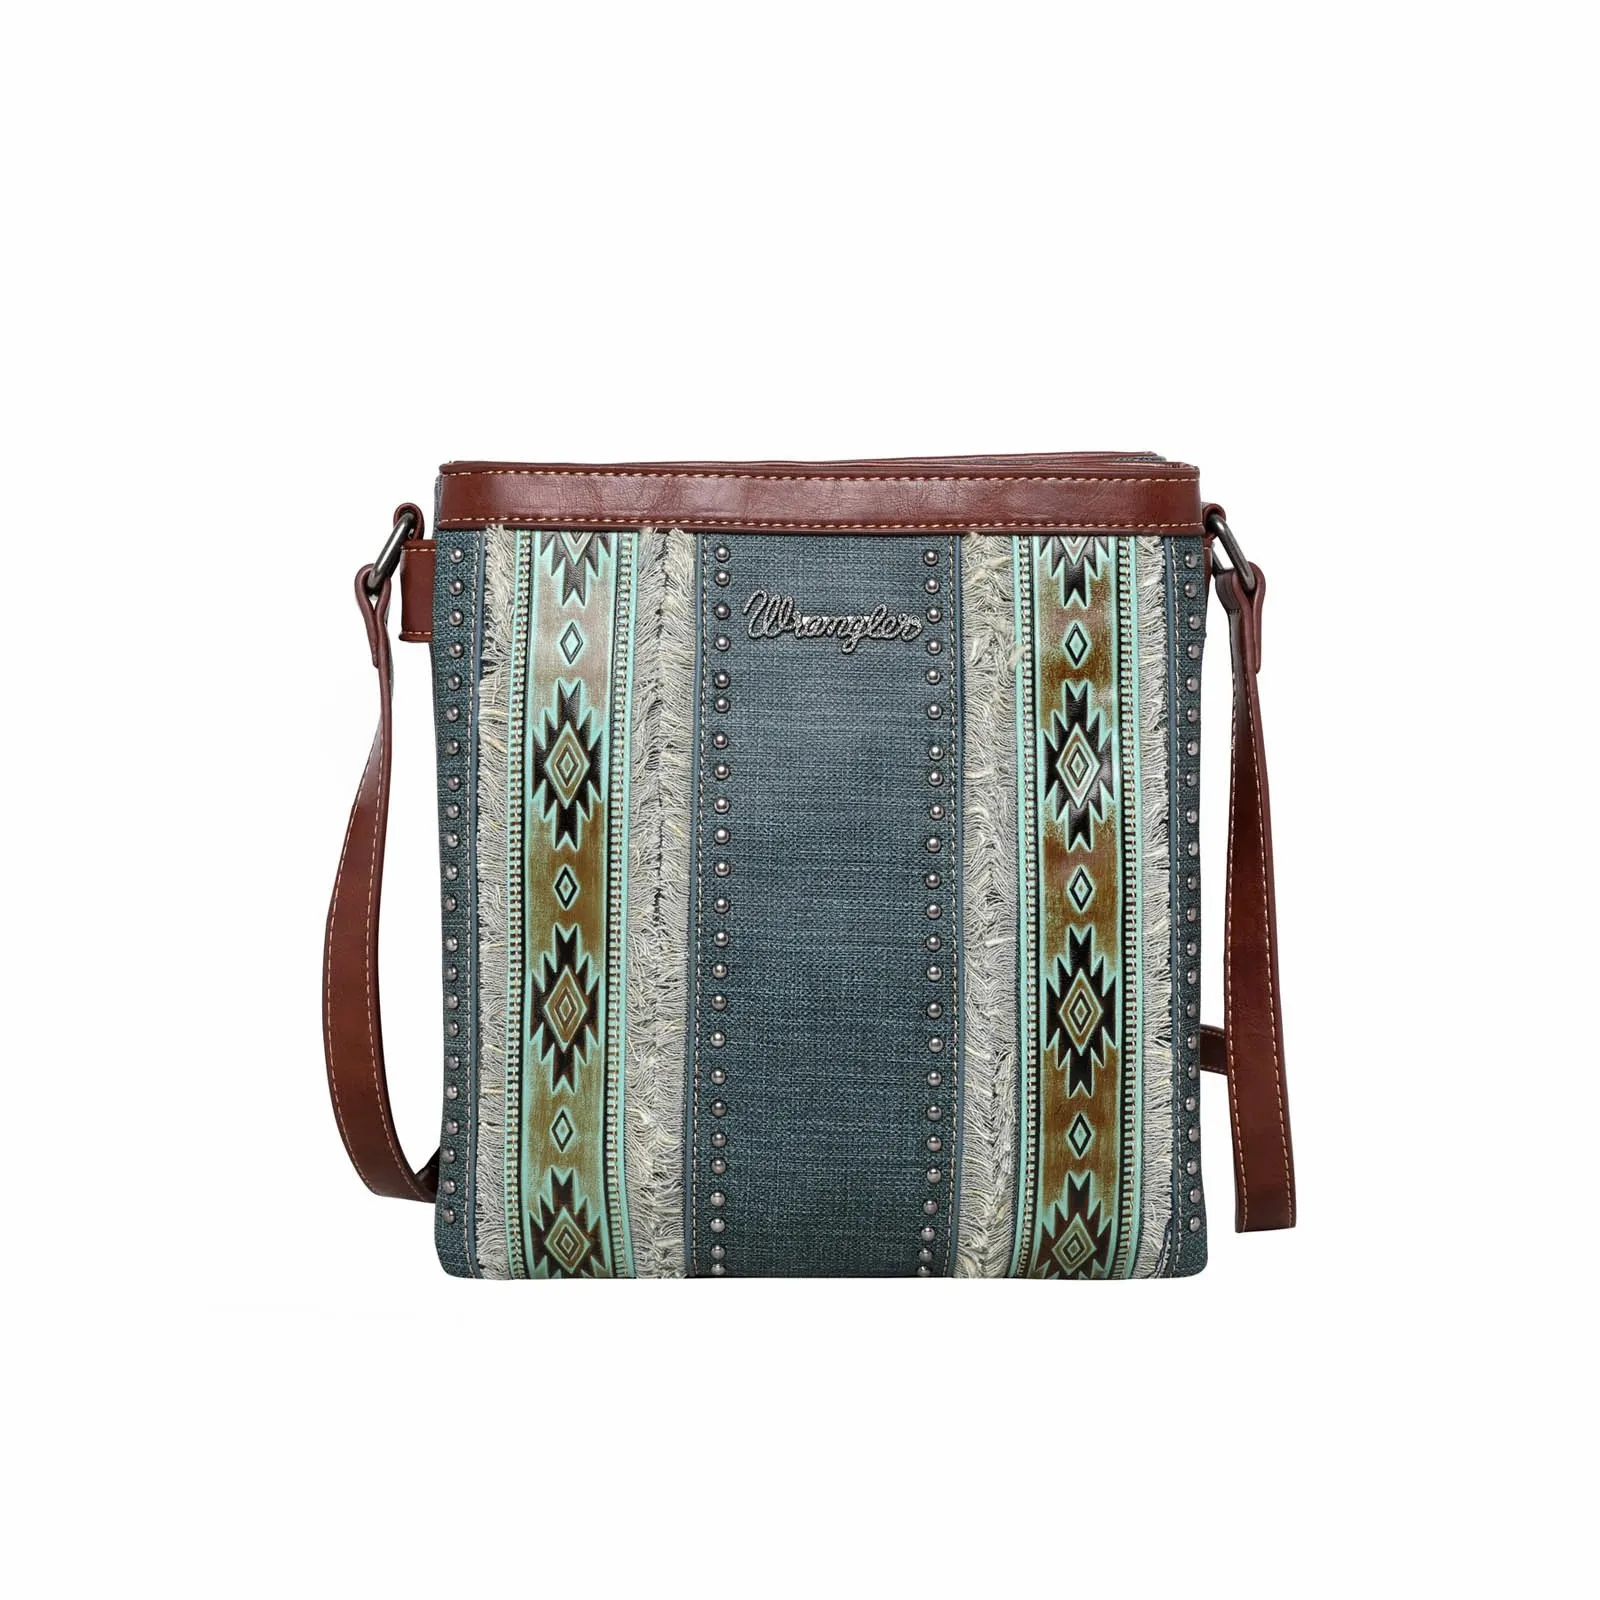 

Сумка кросс-боди Wrangler Aztec для скрытого ношения (Wrangler от Монтаны Уэста), джинсовая сумка с принтом